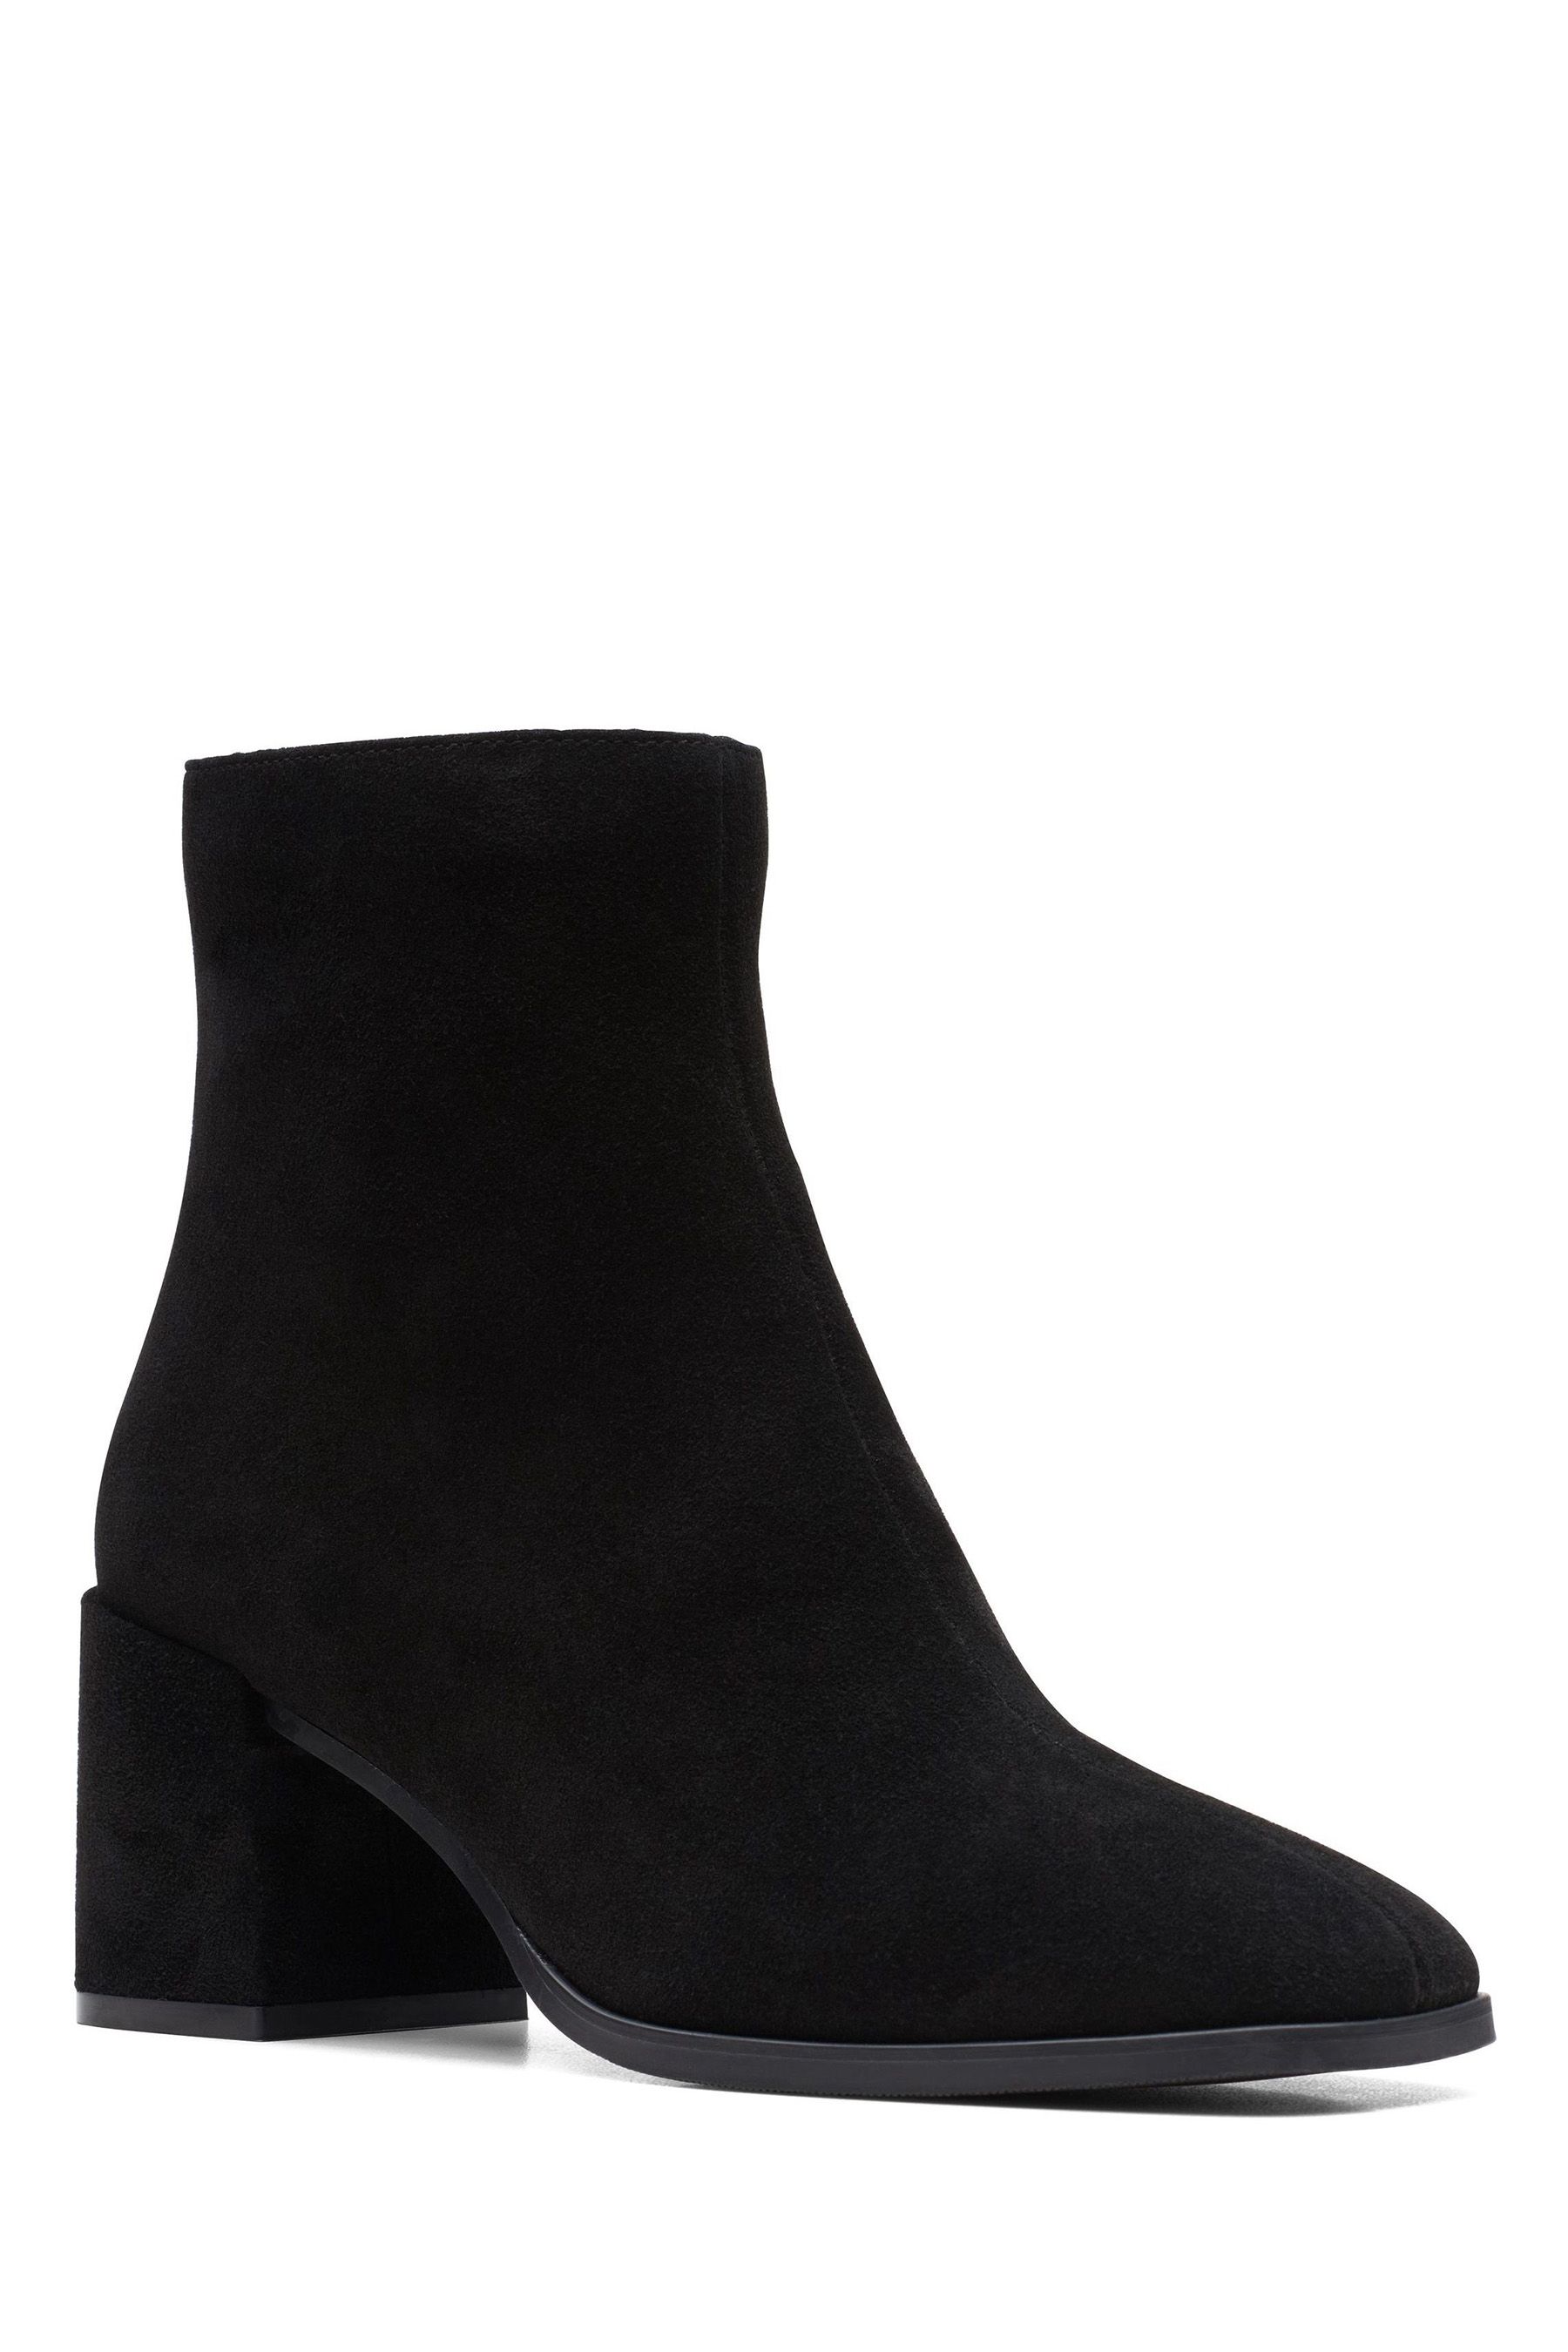 Buy Clarks Black Suede Seren Zip Boots from the Next UK online shop